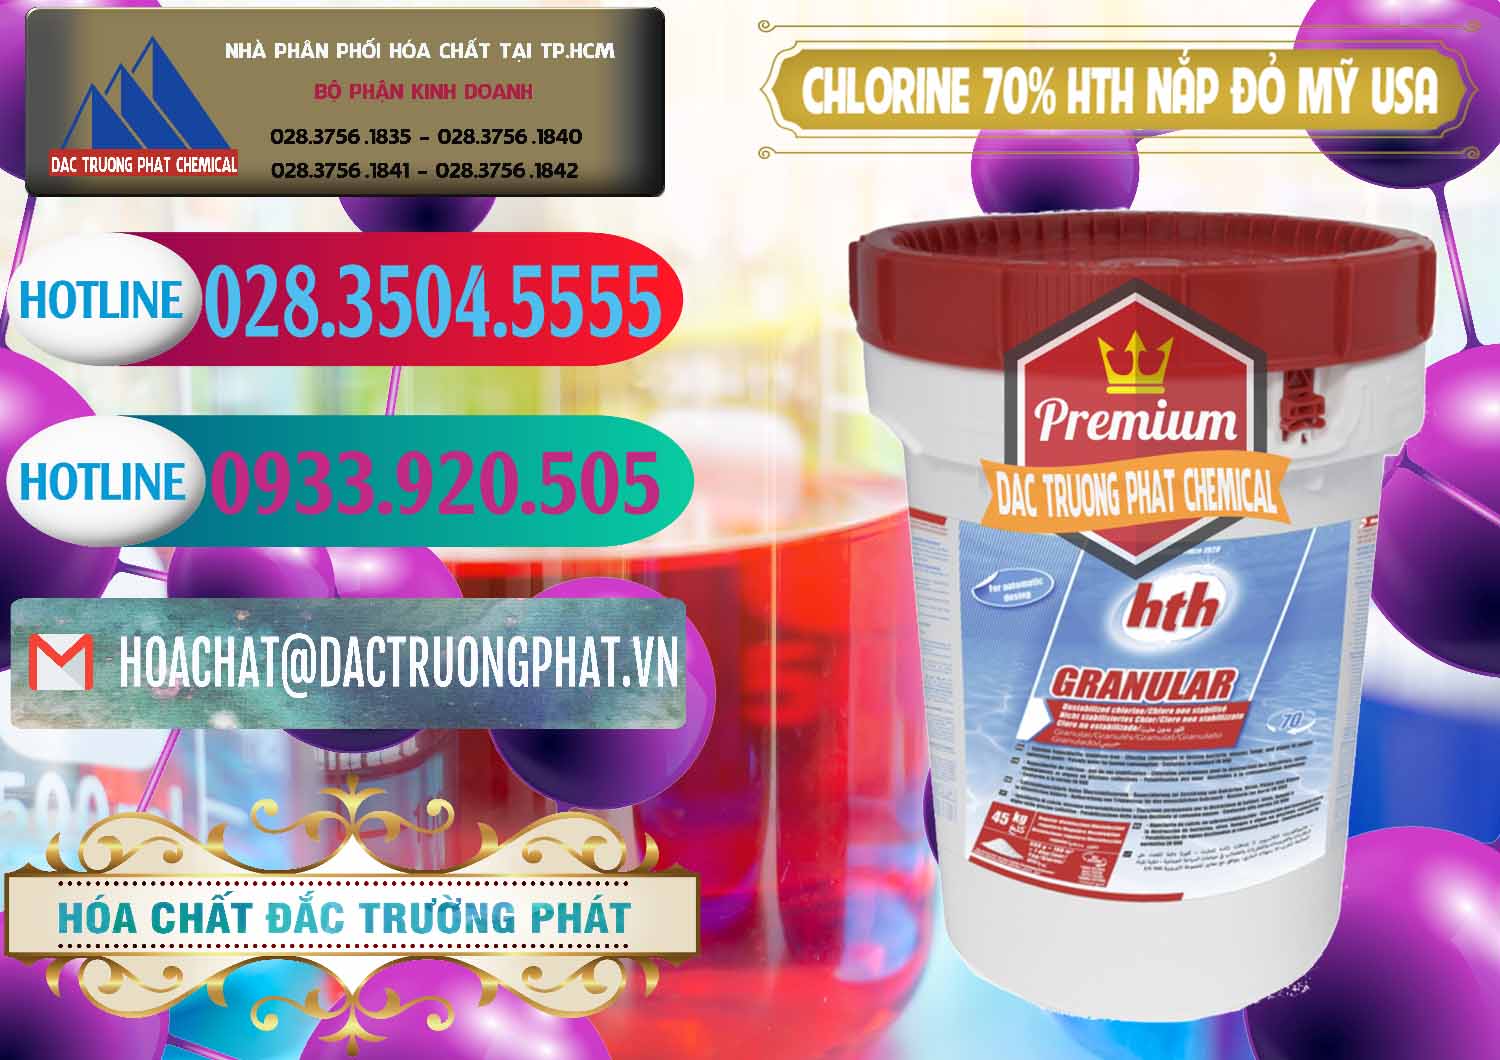 Công ty bán - phân phối Clorin – Chlorine 70% HTH Nắp Đỏ Mỹ Usa - 0244 - Cty cung cấp - phân phối hóa chất tại TP.HCM - truongphat.vn